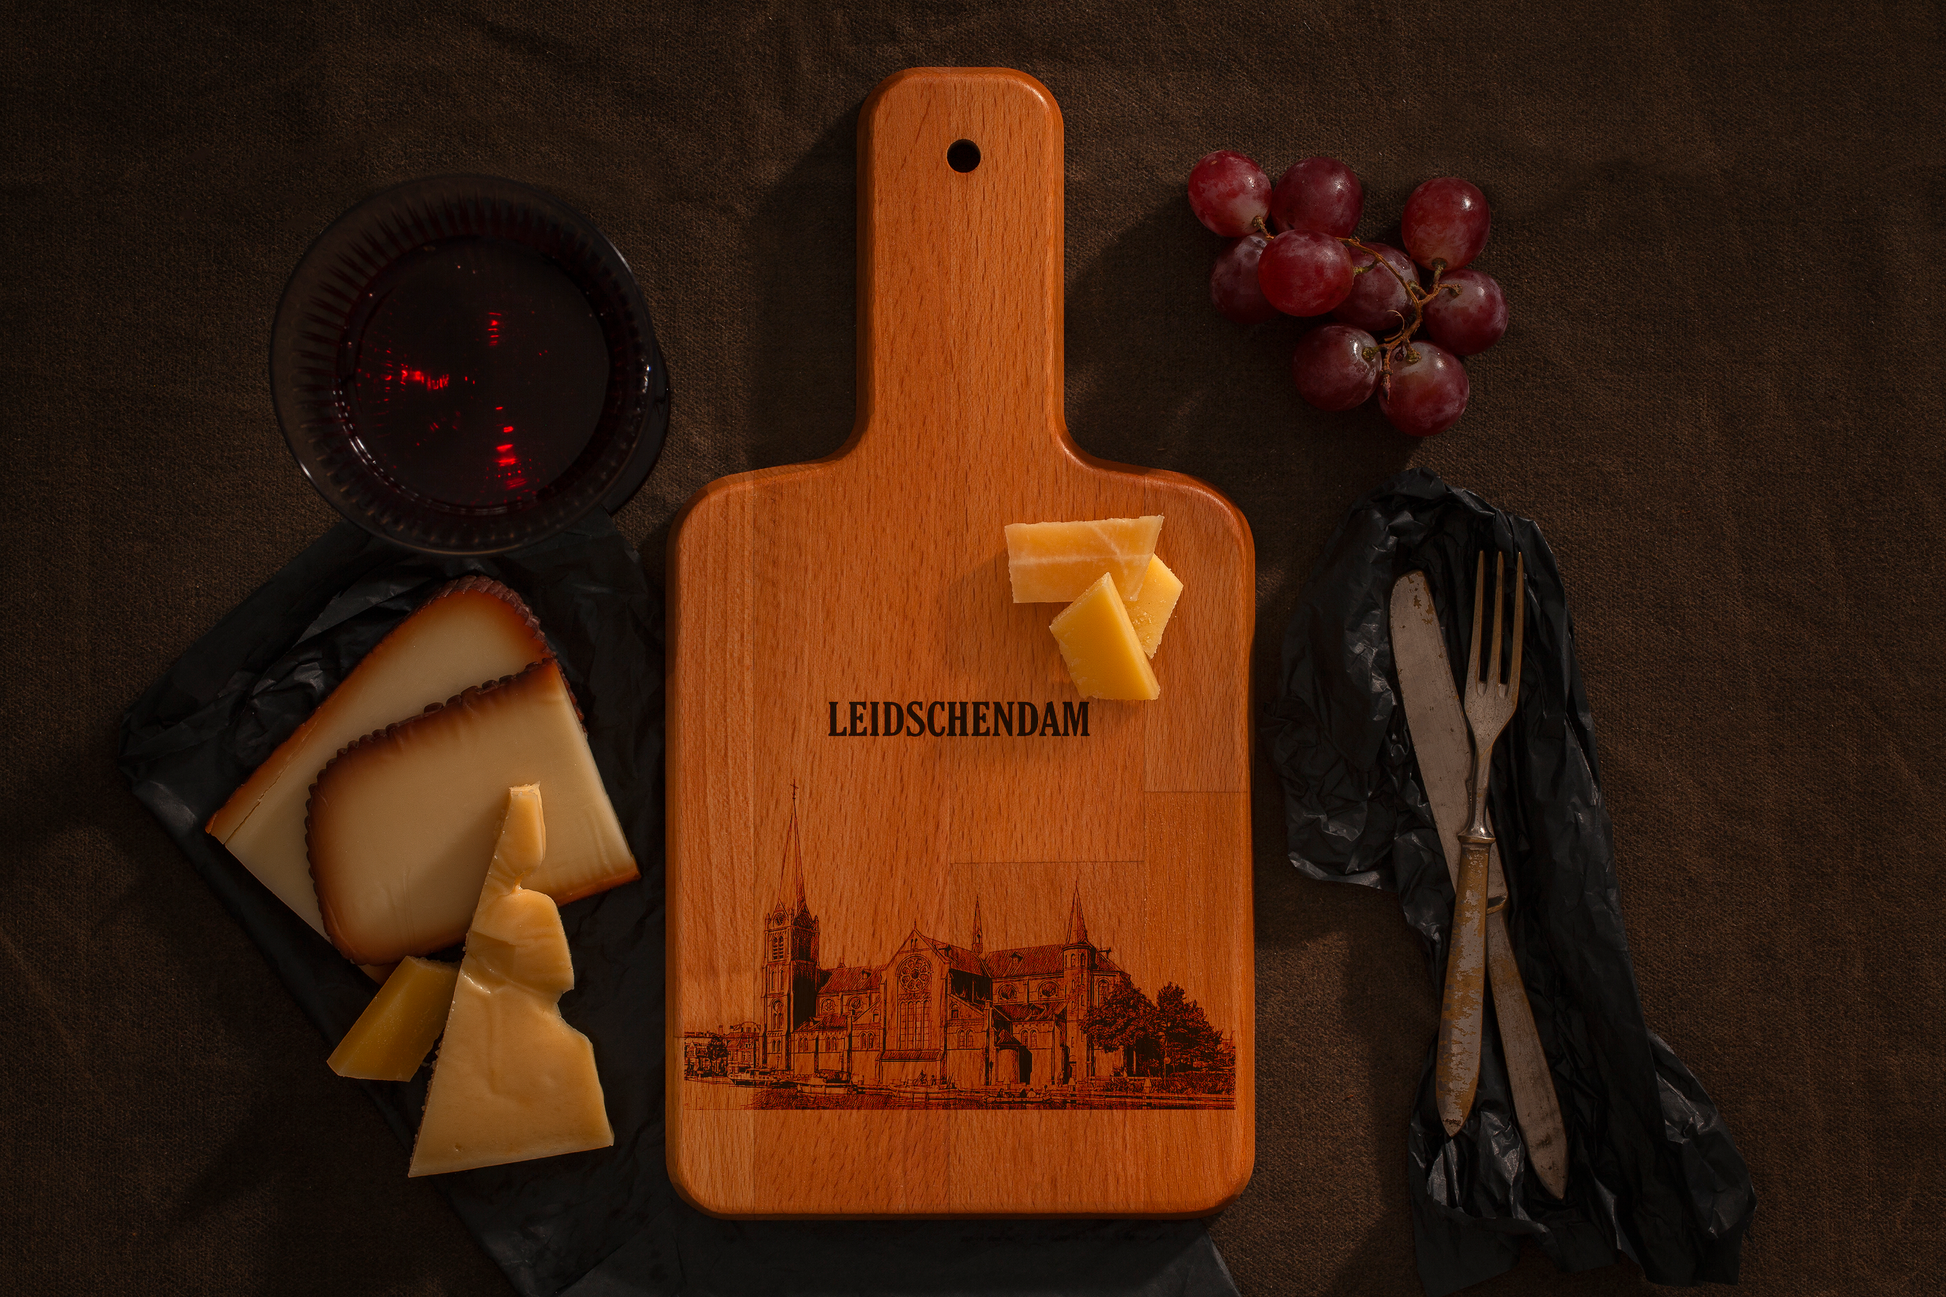 Leidschendam, Petrus en Pauluskerk, cheese board, with cheese